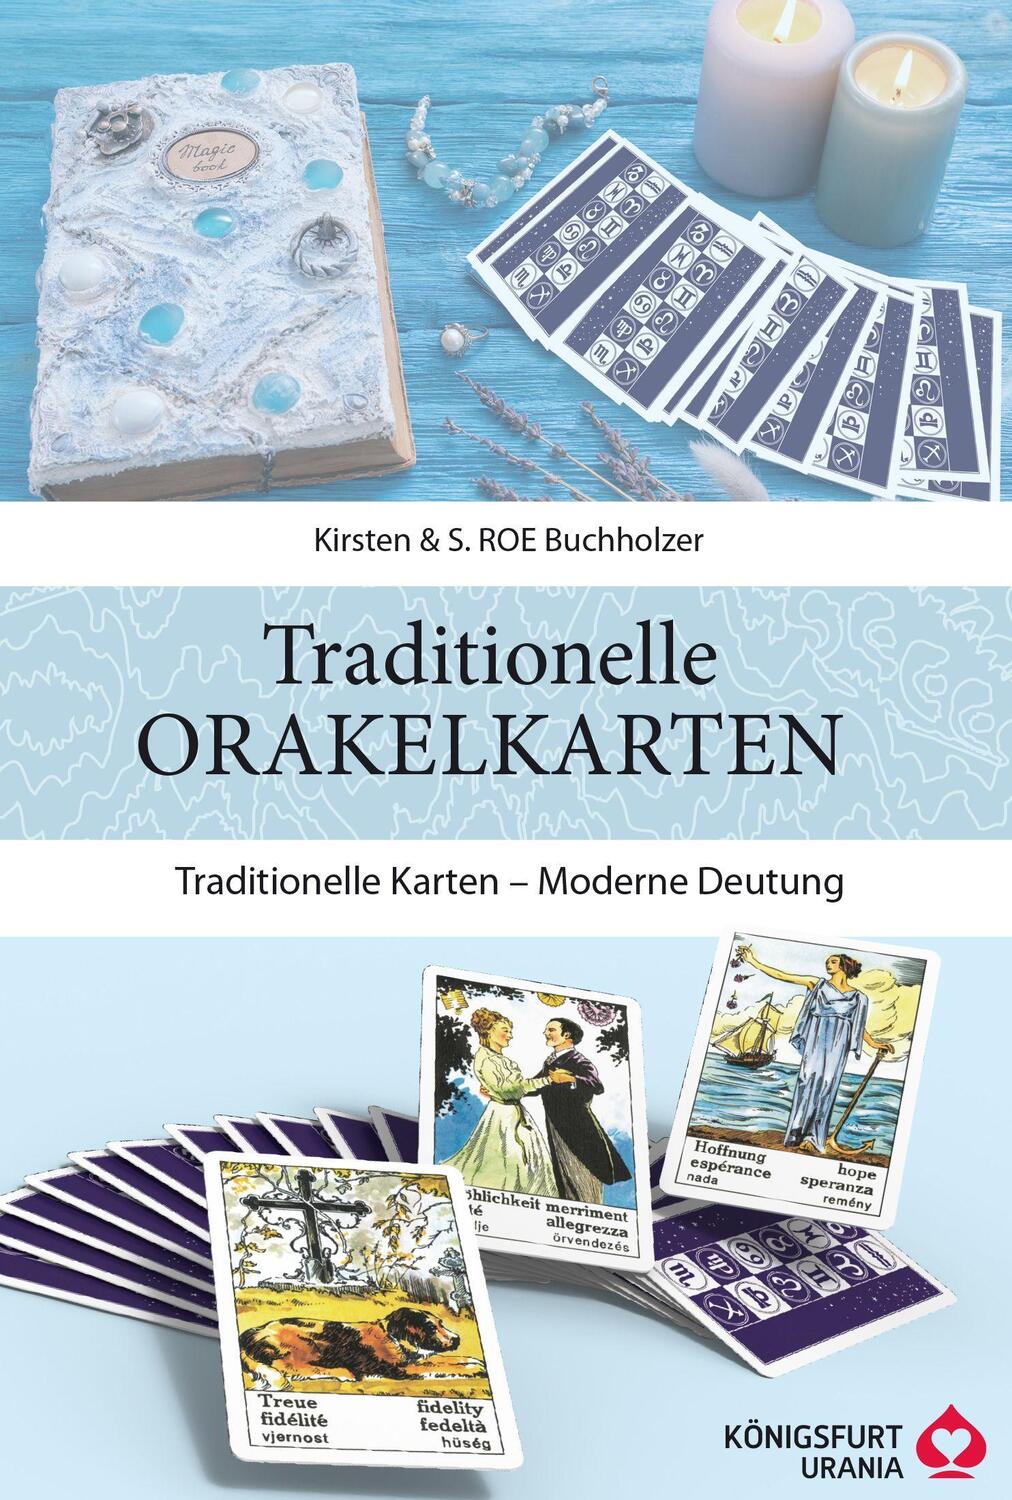 Bild: 9783868267860 | Traditionelle Orakelkarten | Traditionelle Karten - Moderne Deutung